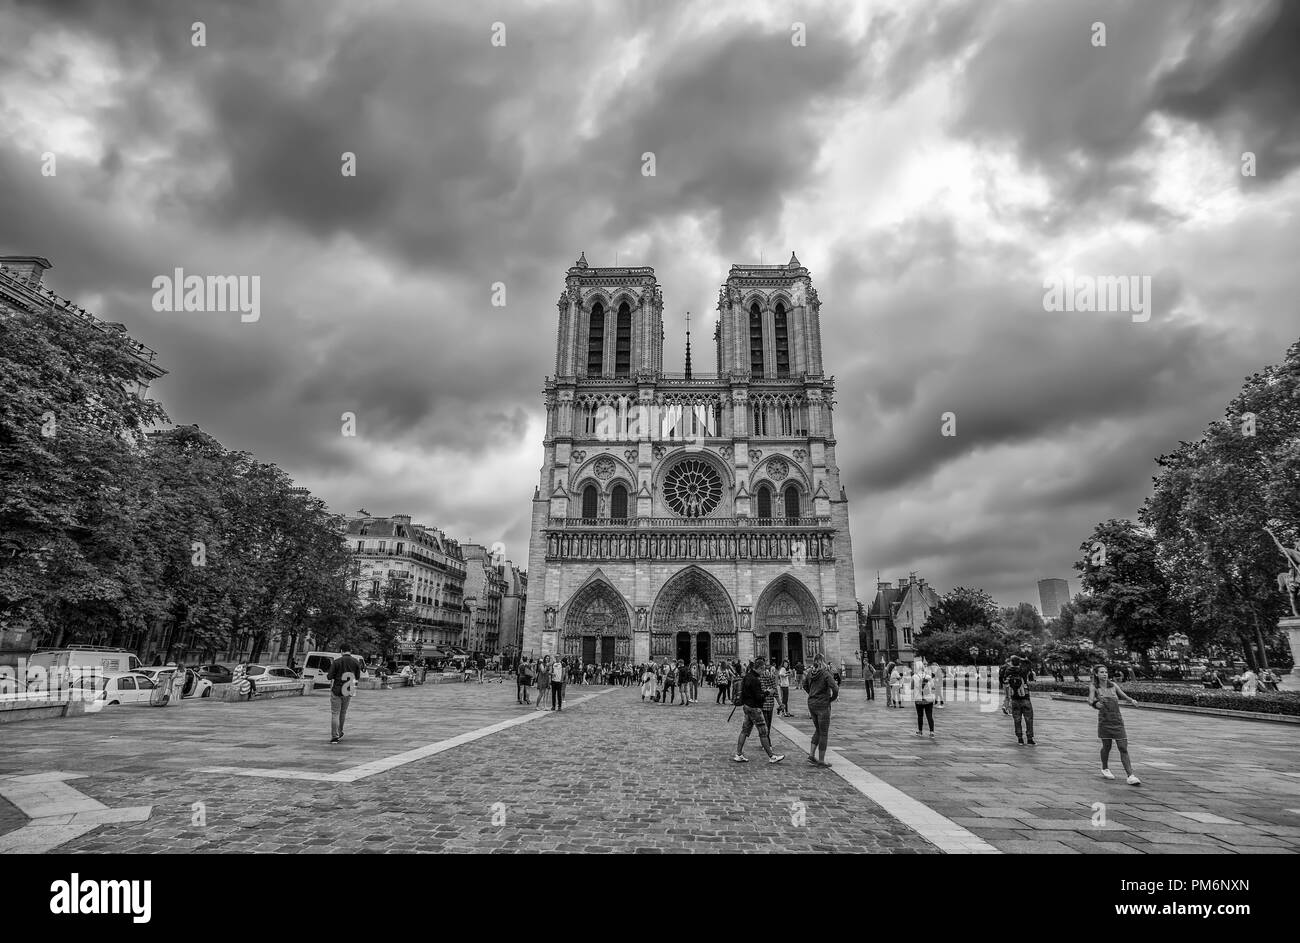 PARIS, FRANCE, SEPTEMBER 6, 2018 - Notre Dame de Paris Chatedral in Paris, France Stock Photo